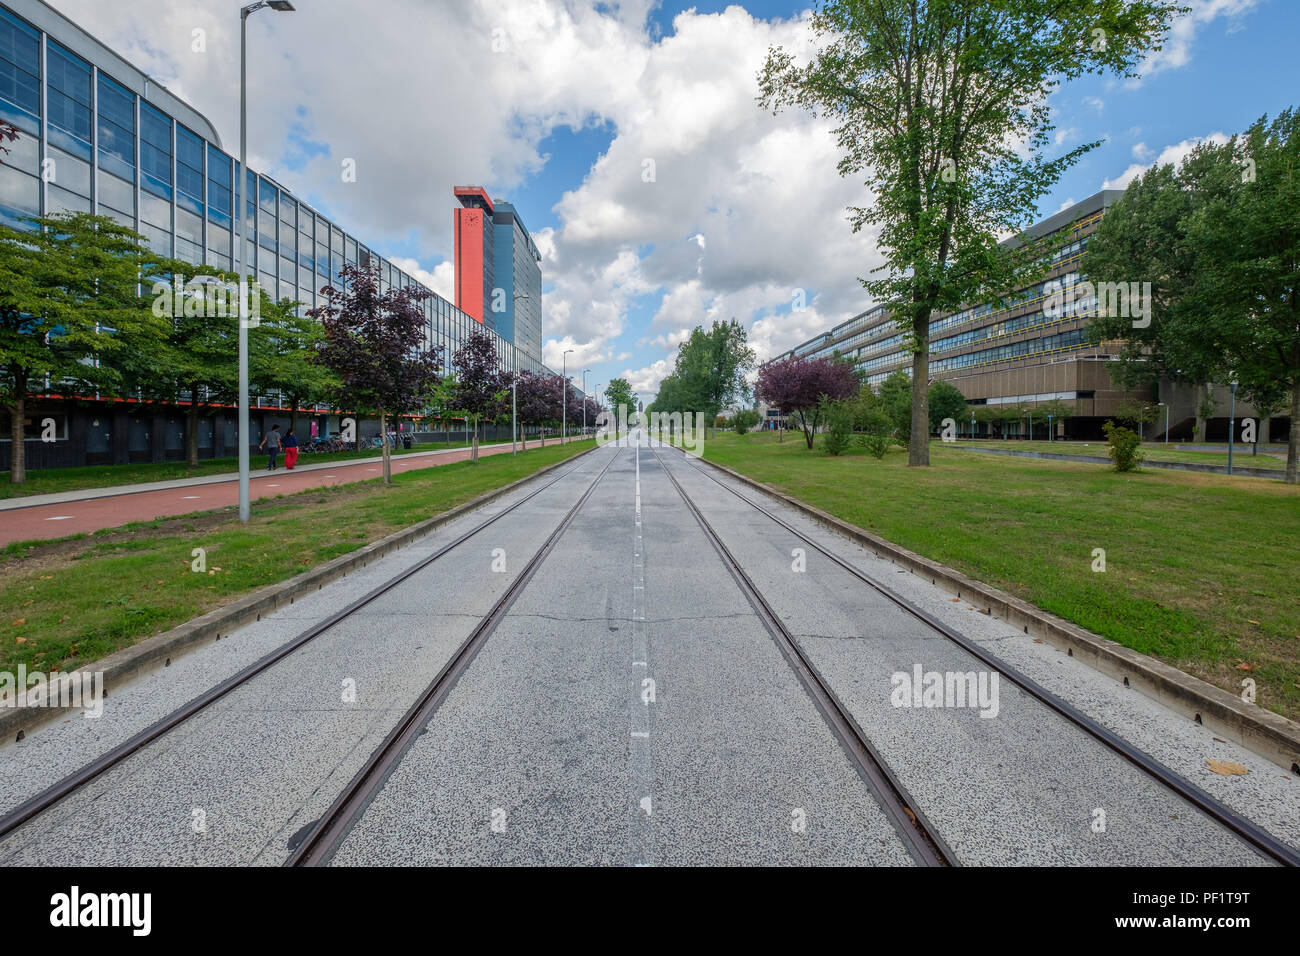 Perspektivische Ansicht eines Campus der Universität, Delft, Niederlande. Stockfoto